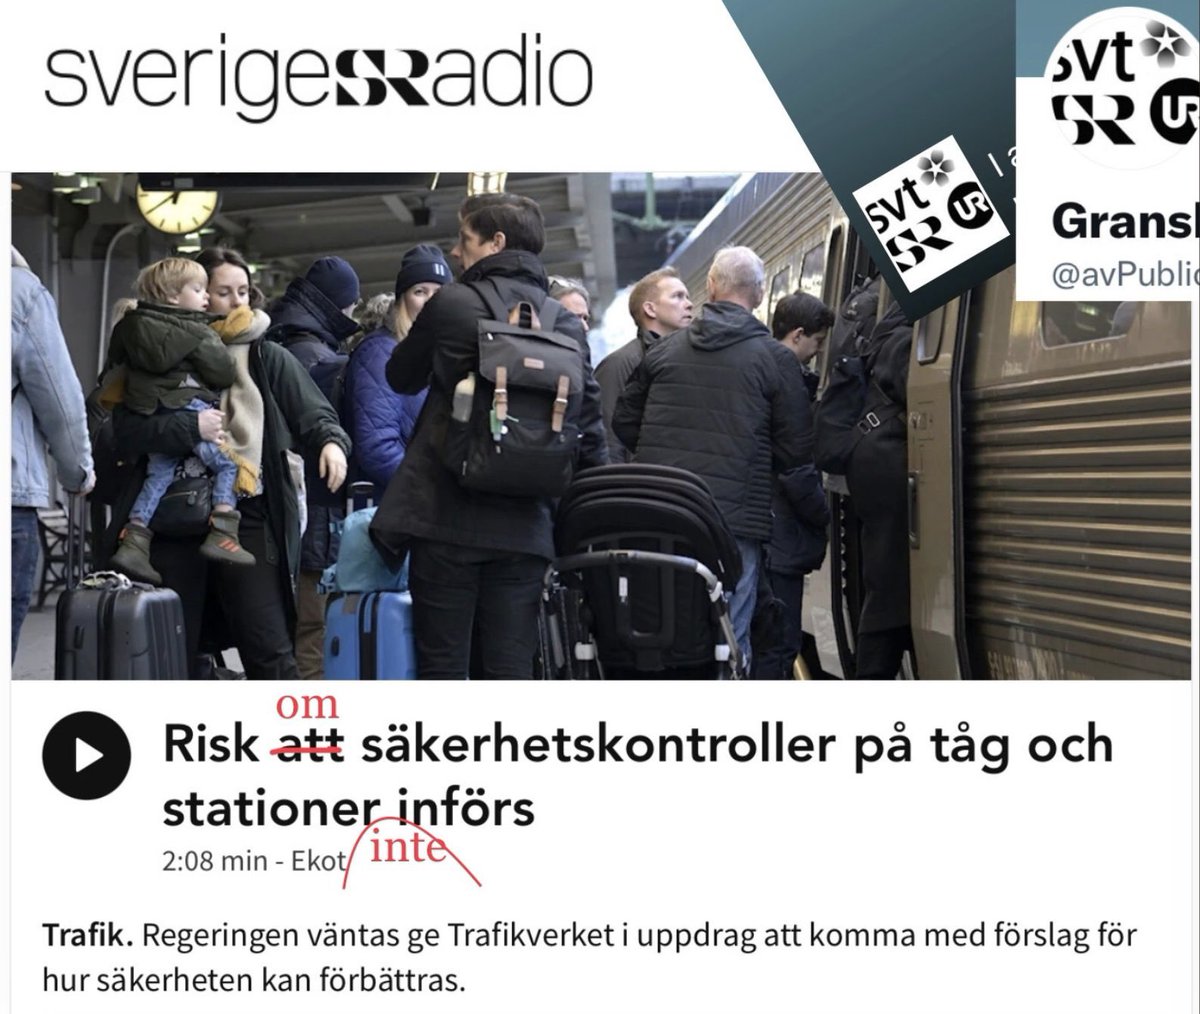 Hej @SverigesRadio, här är en alternativ rubrik ni kan fundera över. @SverigesRadio #journalistik Risk att säkerhetskontroller på tåg och stationer införs sverigesradio.se/artikel/risk-a…